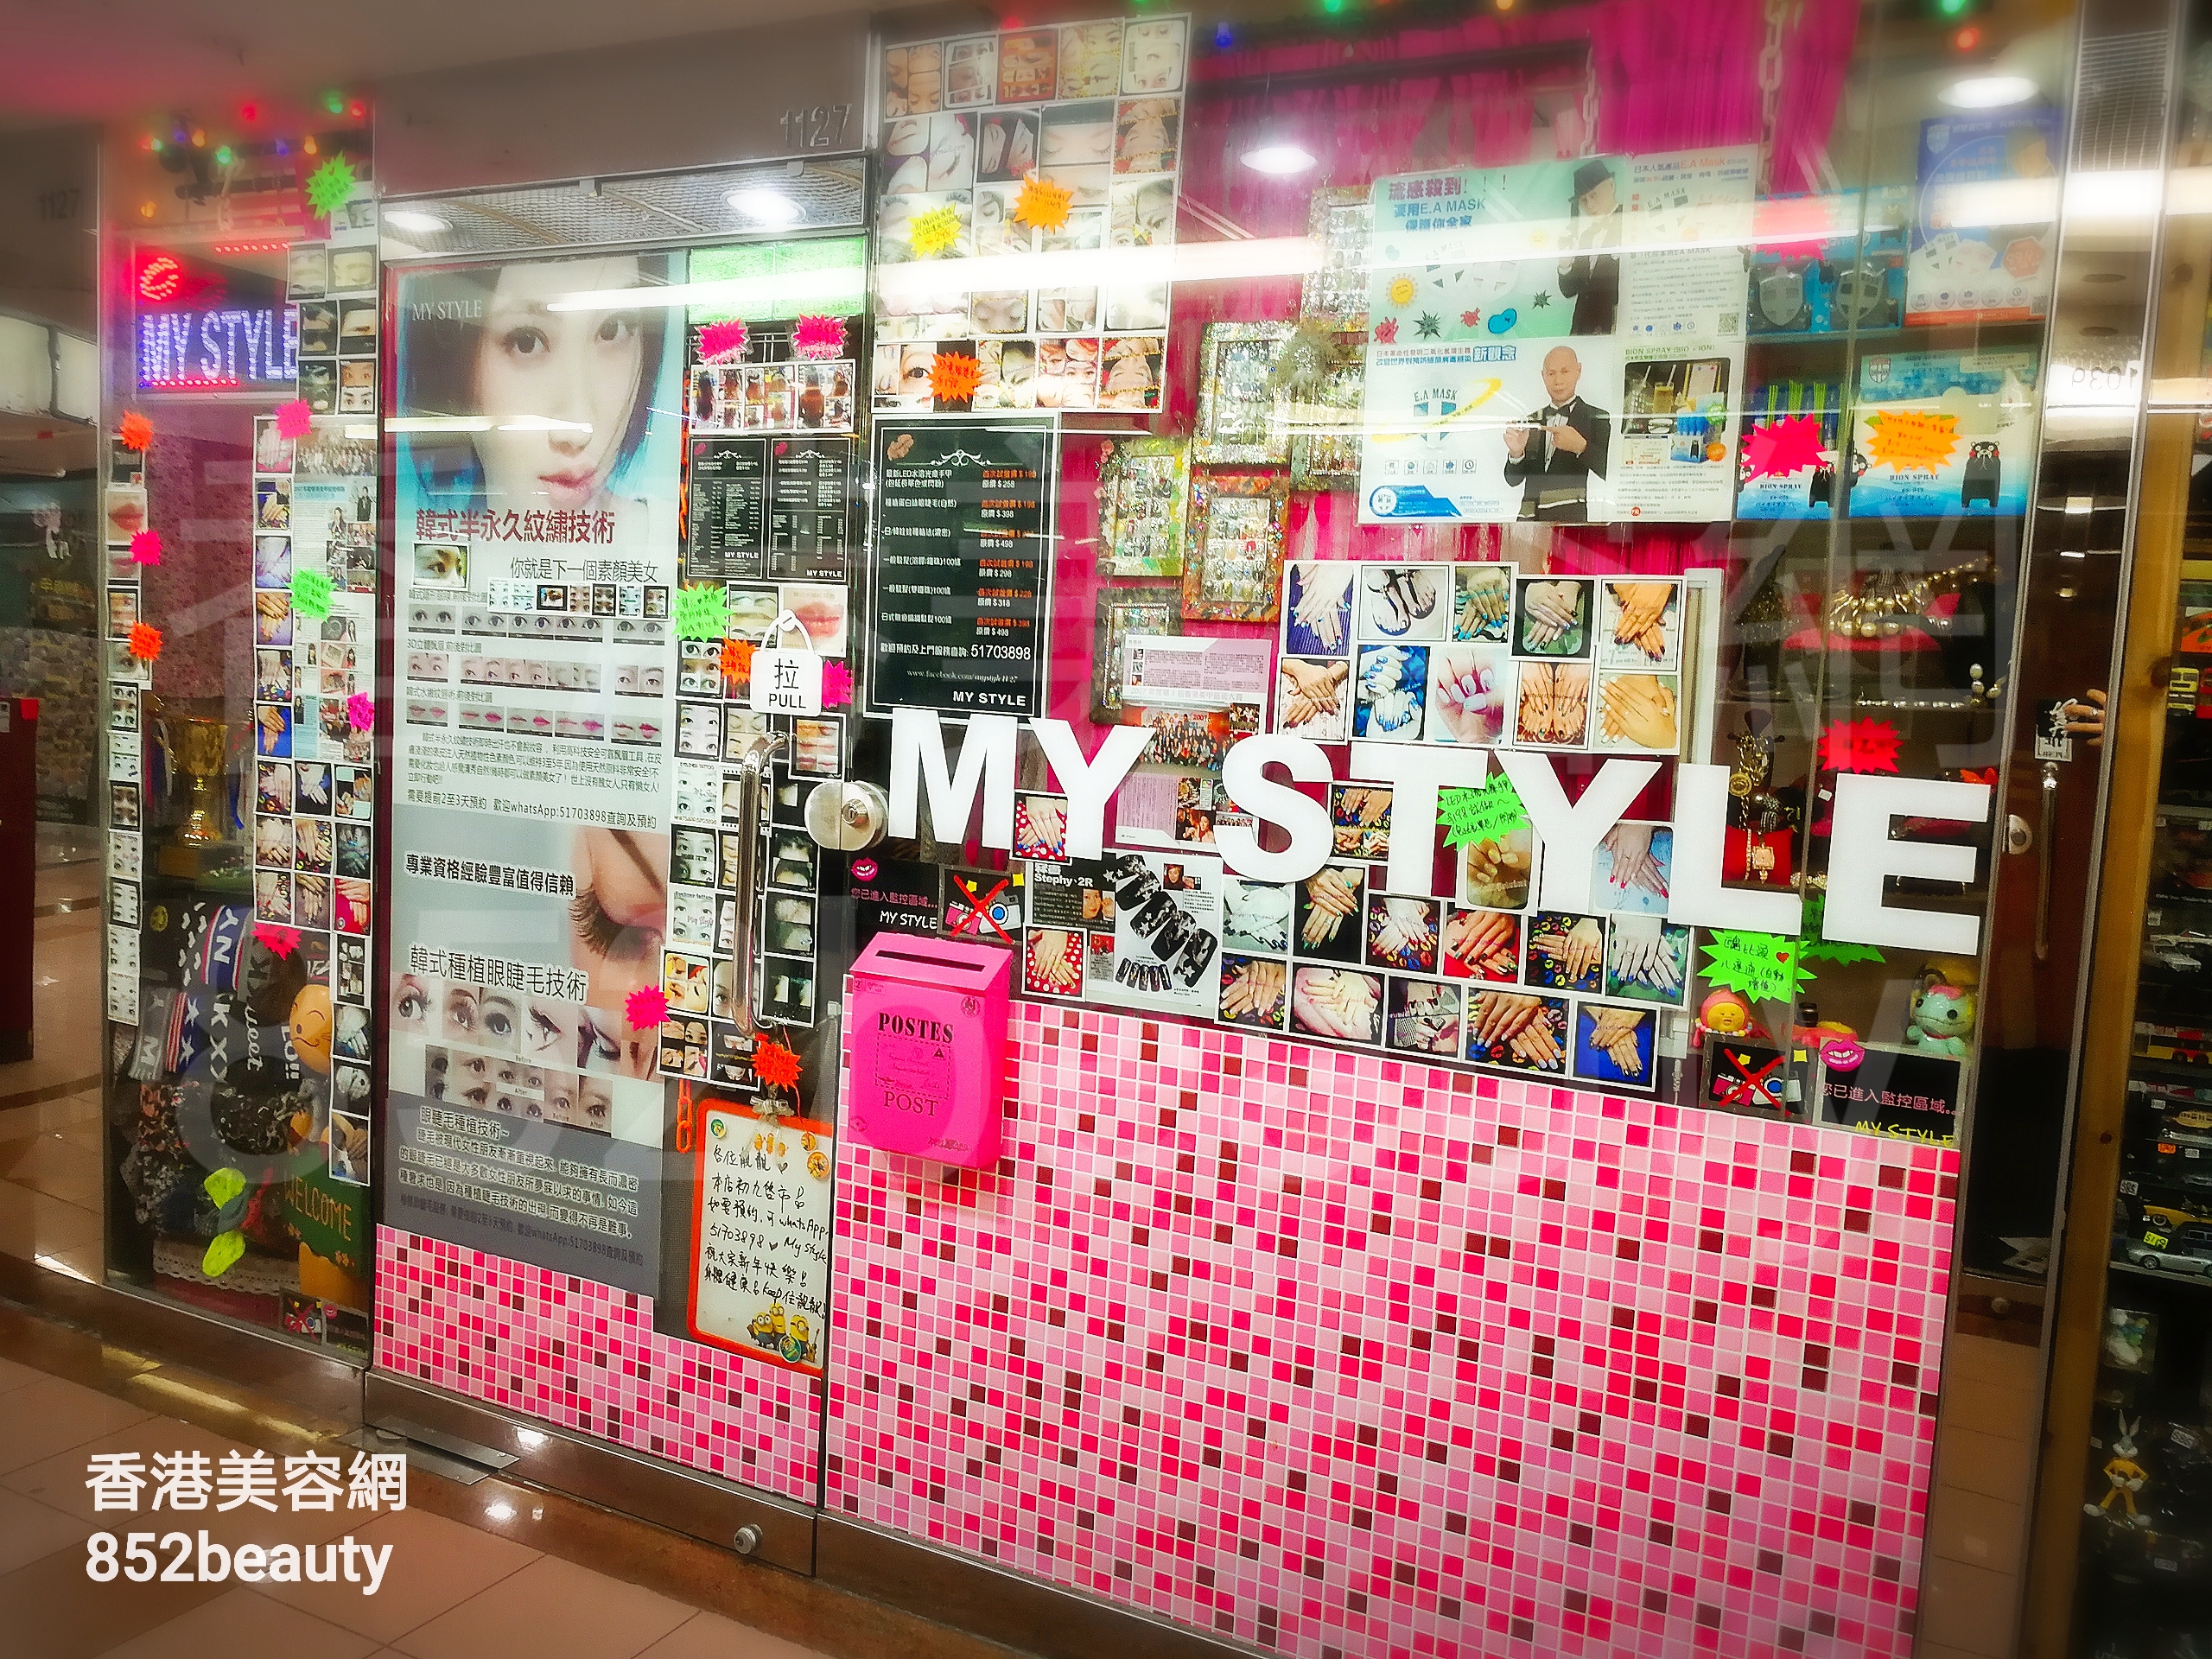 香港美容網 Hong Kong Beauty Salon 美容院 / 美容師: MY STYLE